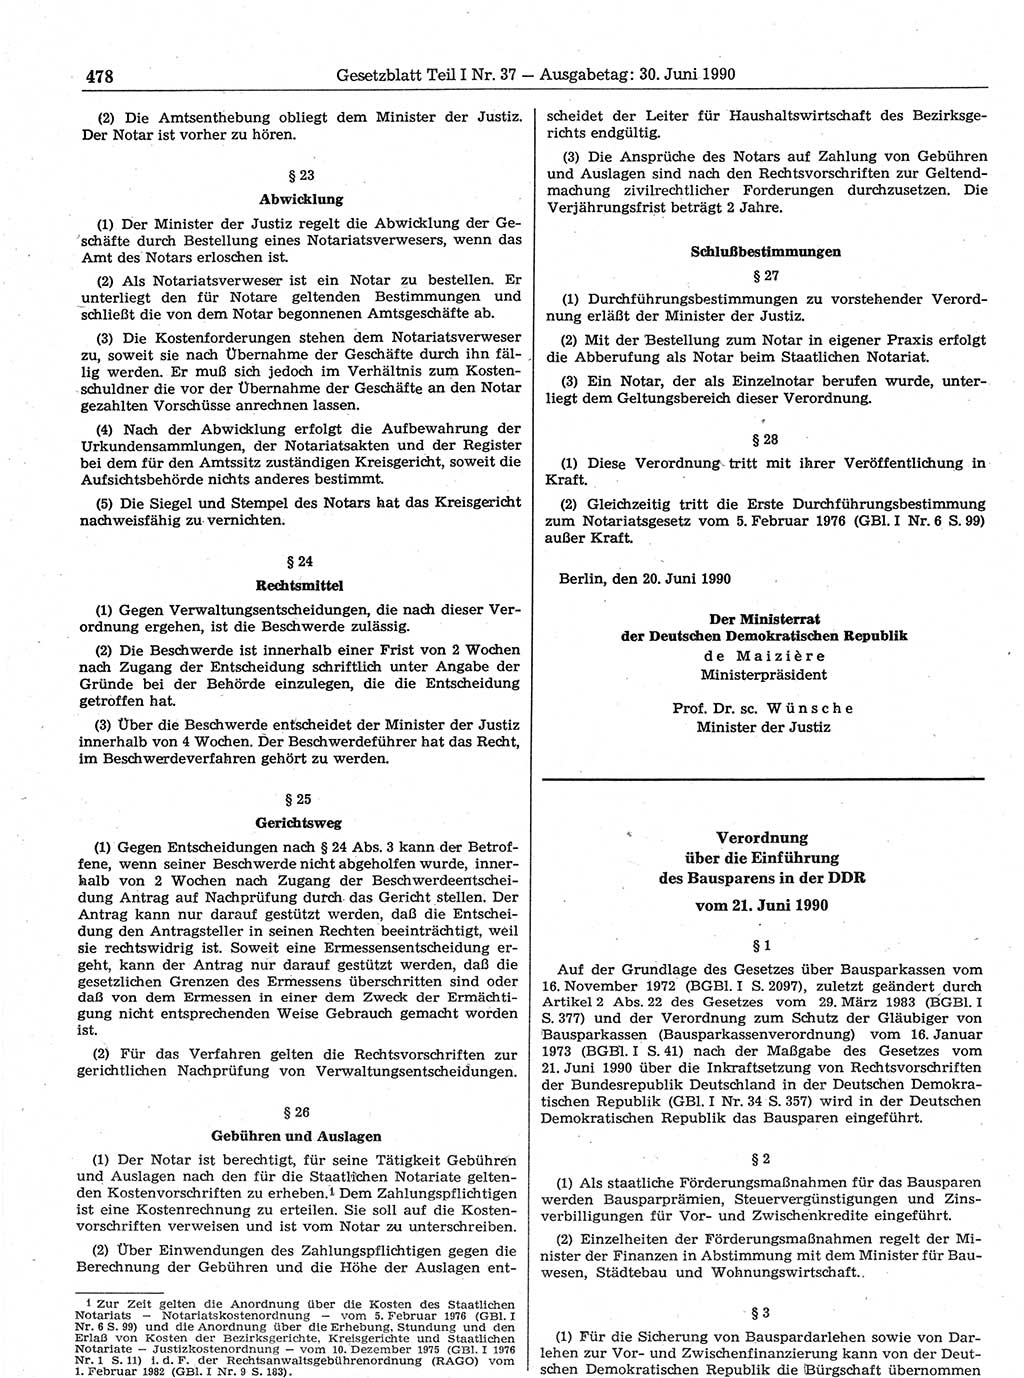 Gesetzblatt (GBl.) der Deutschen Demokratischen Republik (DDR) Teil Ⅰ 1990, Seite 478 (GBl. DDR Ⅰ 1990, S. 478)